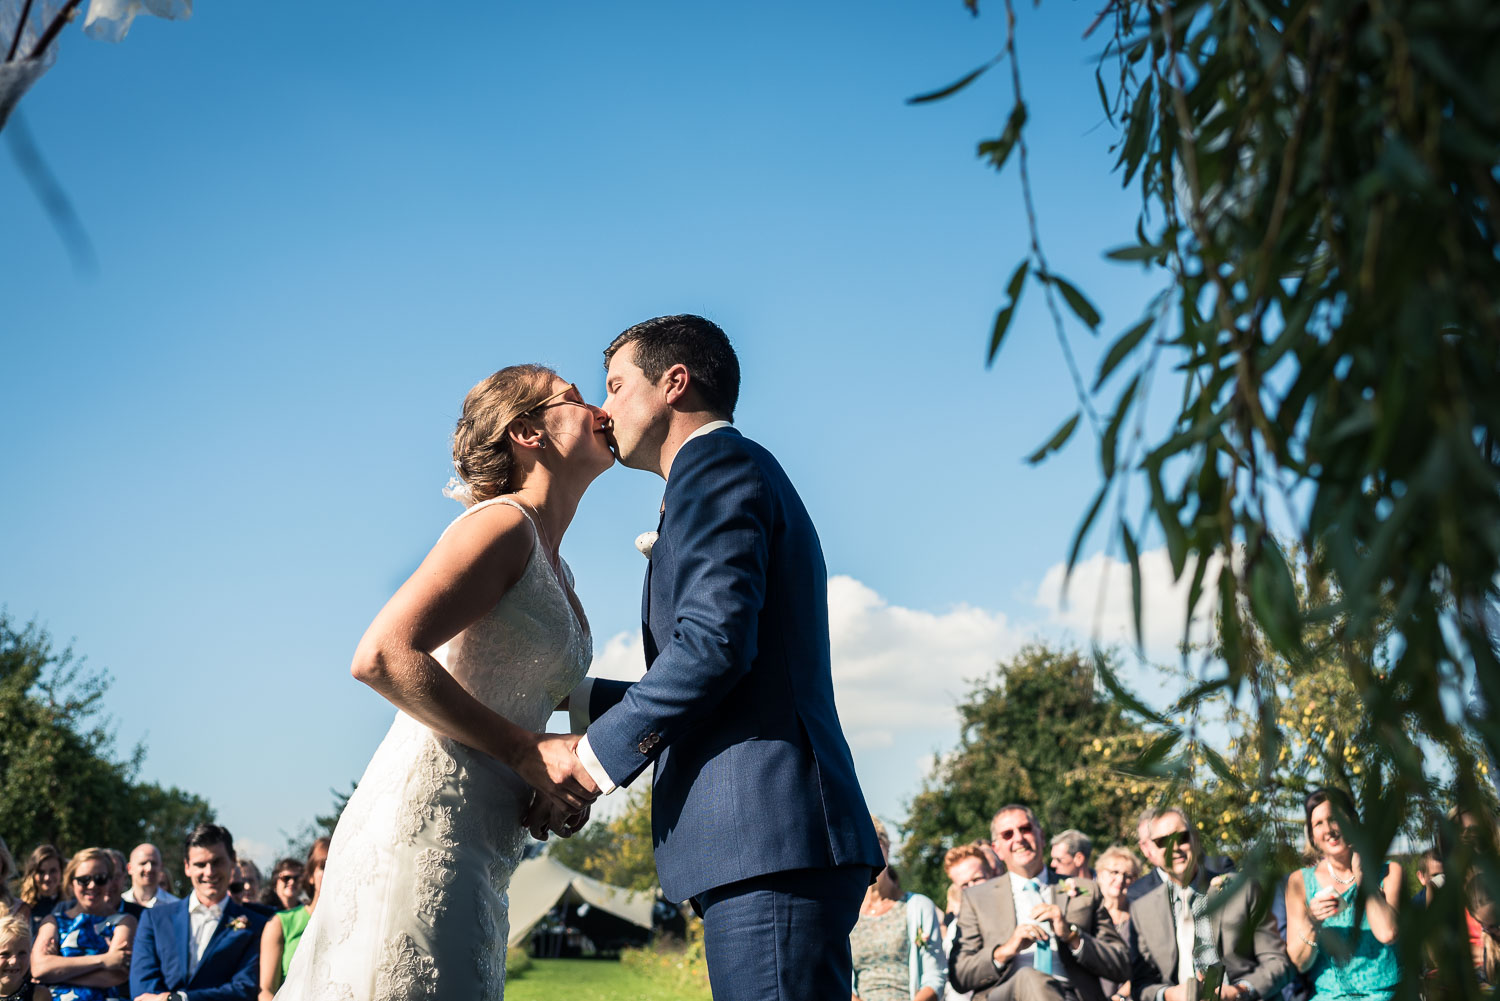 de kus tijdens ceremonie huwelijk, vastgelegd door trouwfotograaf uit Brabant Cfoto